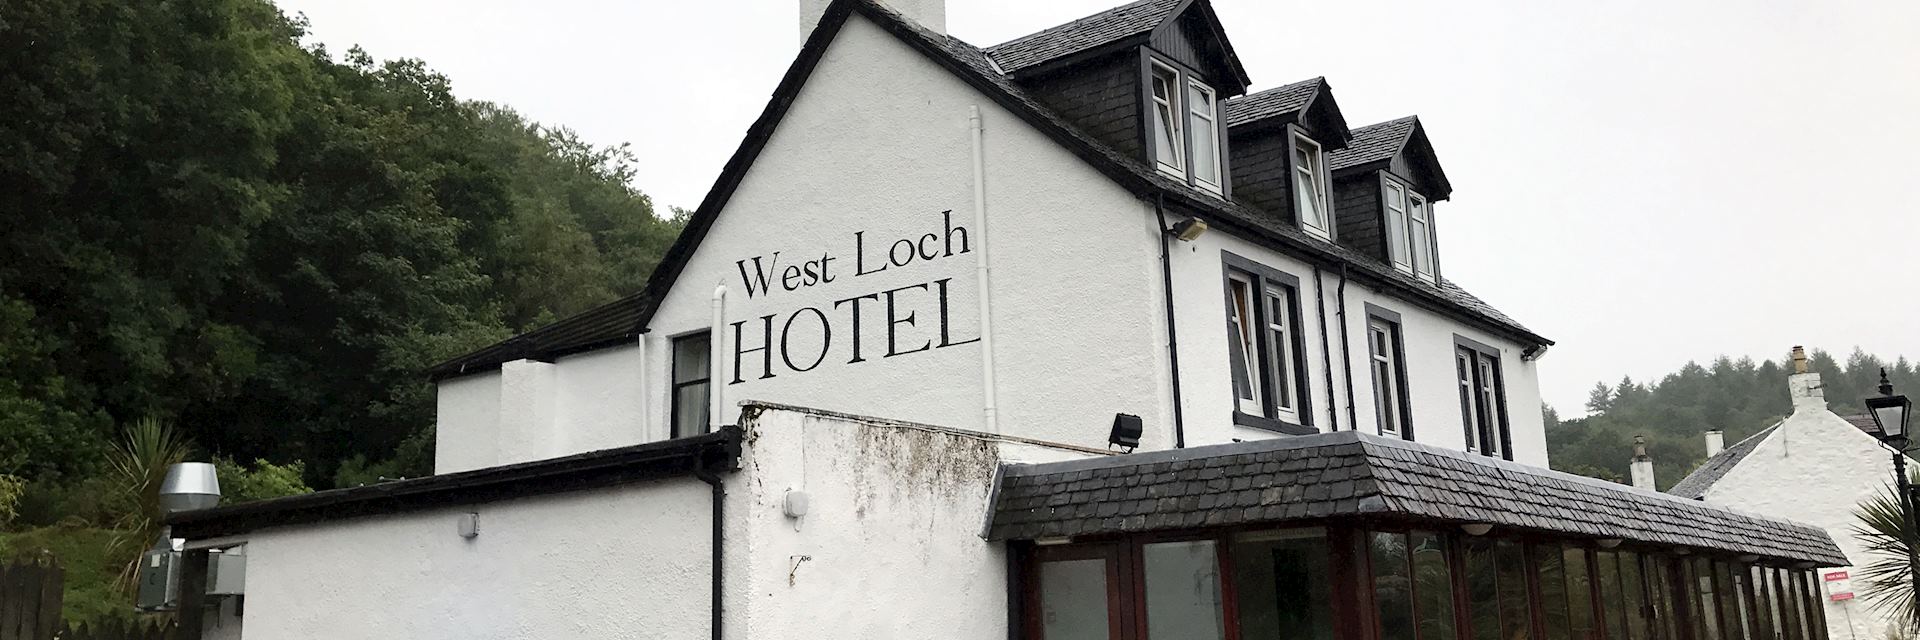 West Loch Hotel